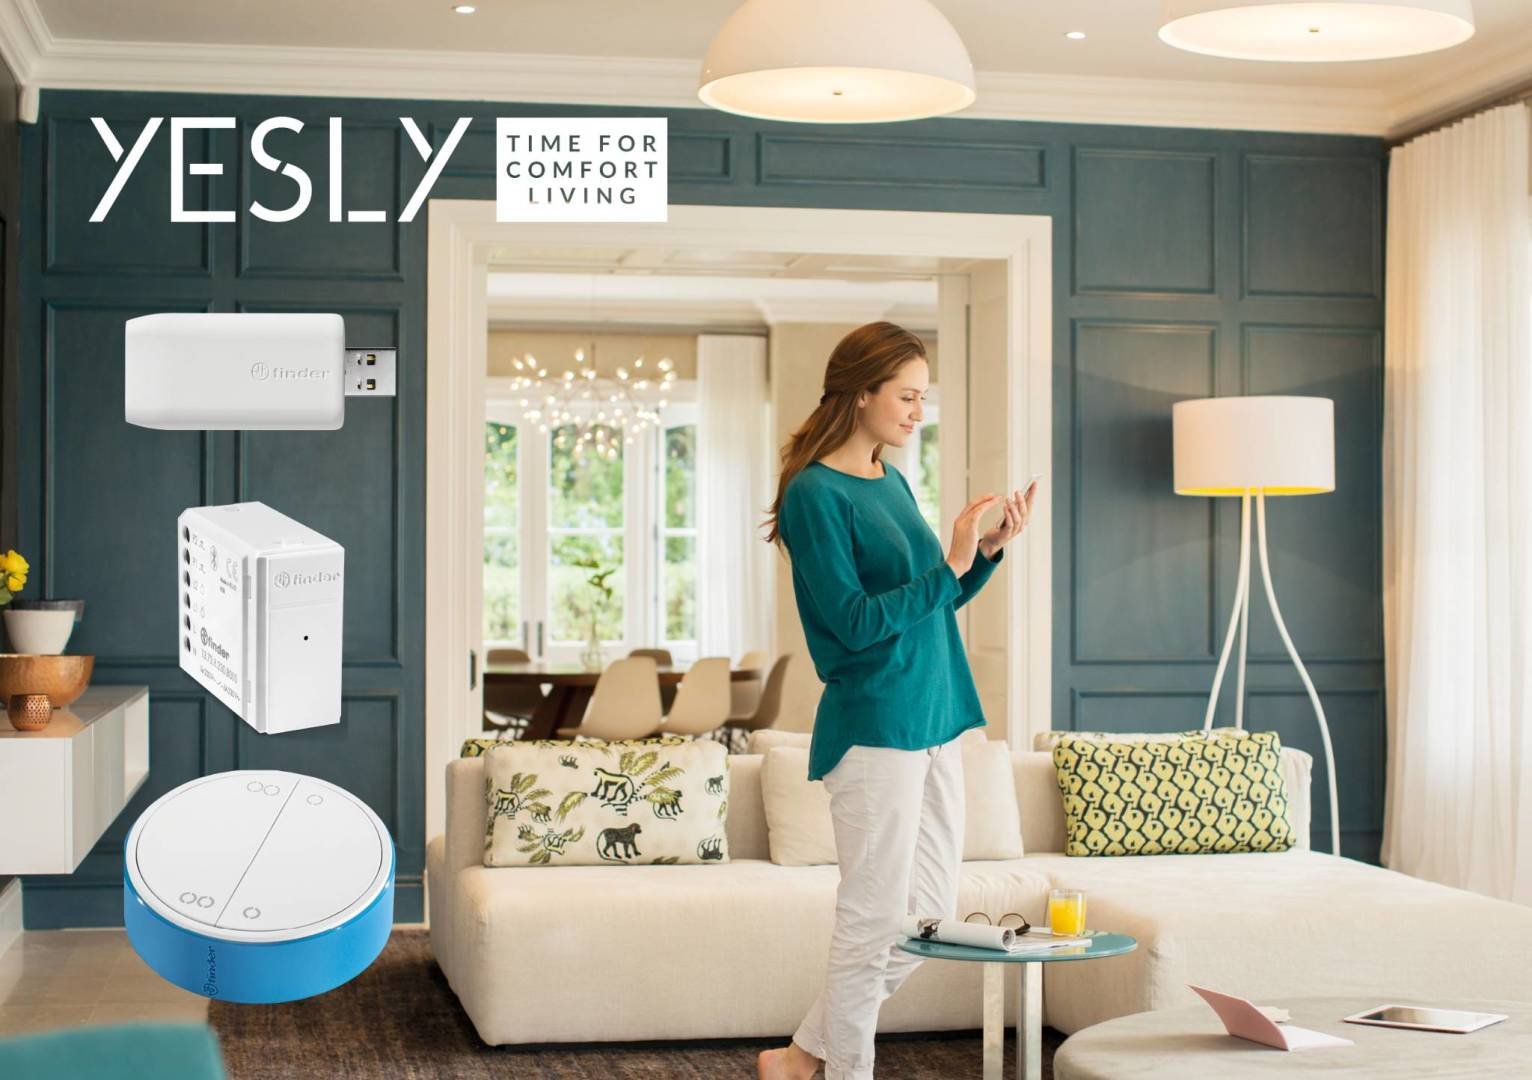 Immagine di Finder Yesly, per una casa smart, semplice e veloce